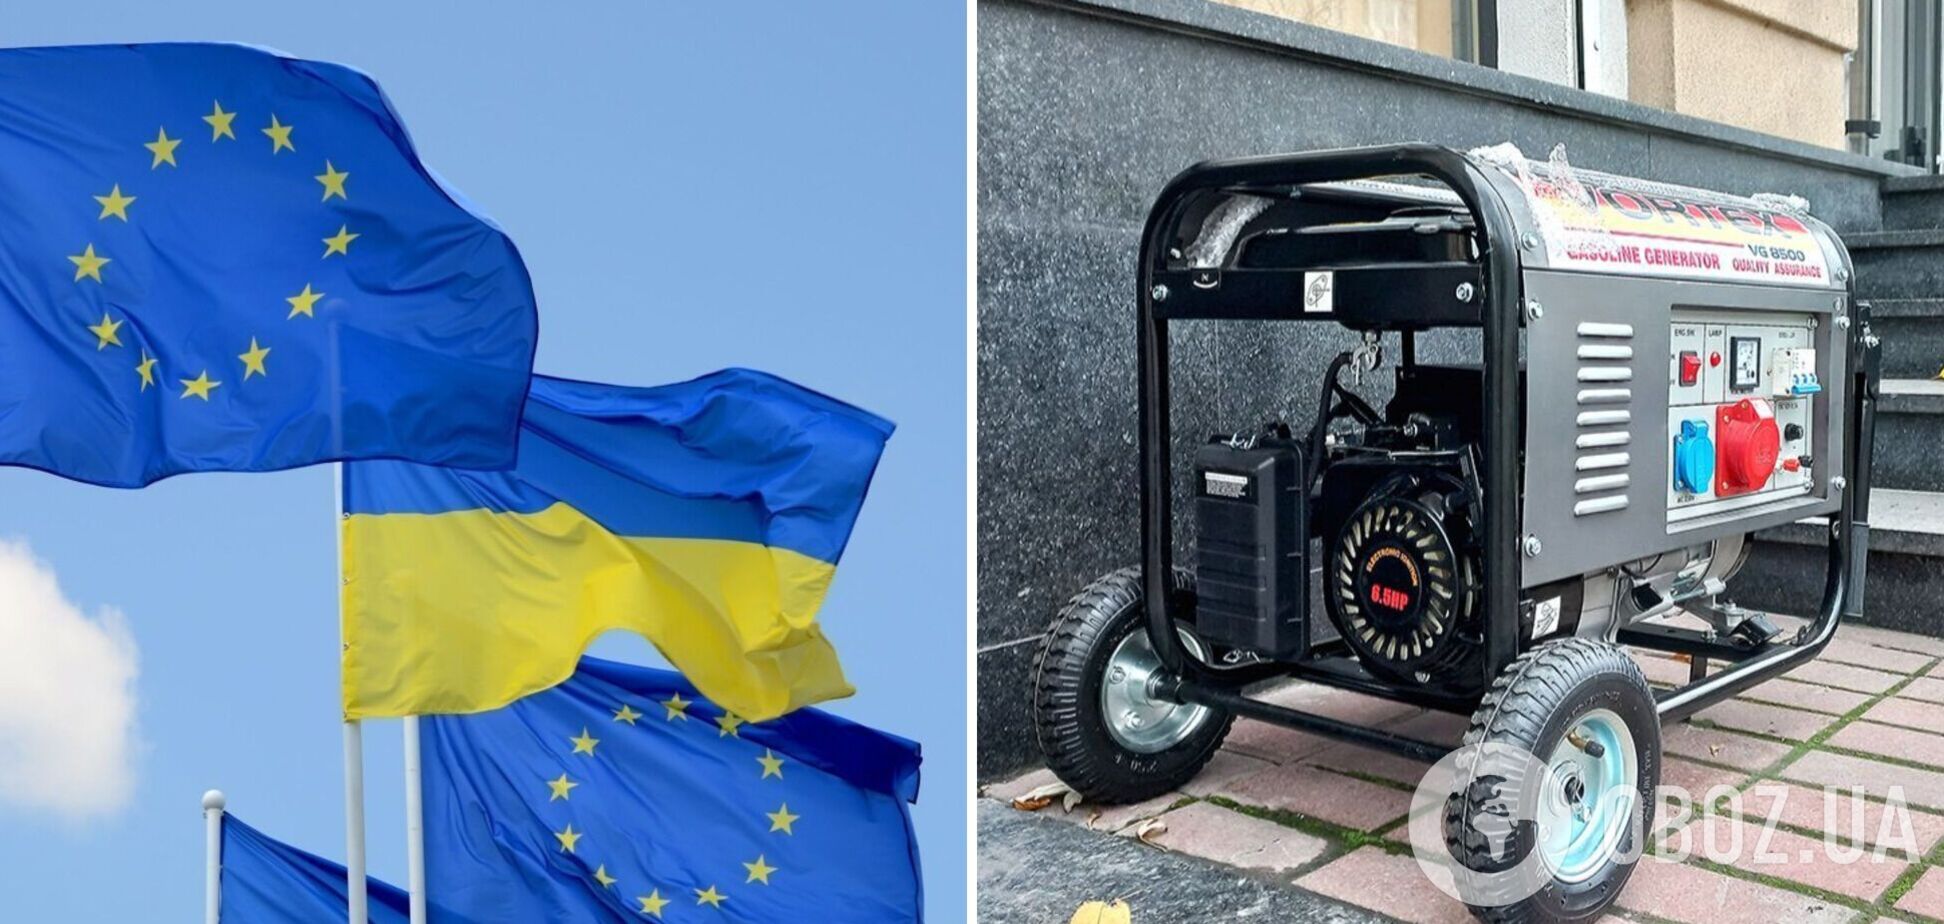 Евросоюз передаст Украине 200 трансформаторов и 40 больших генераторов, – фон дер Ляйен